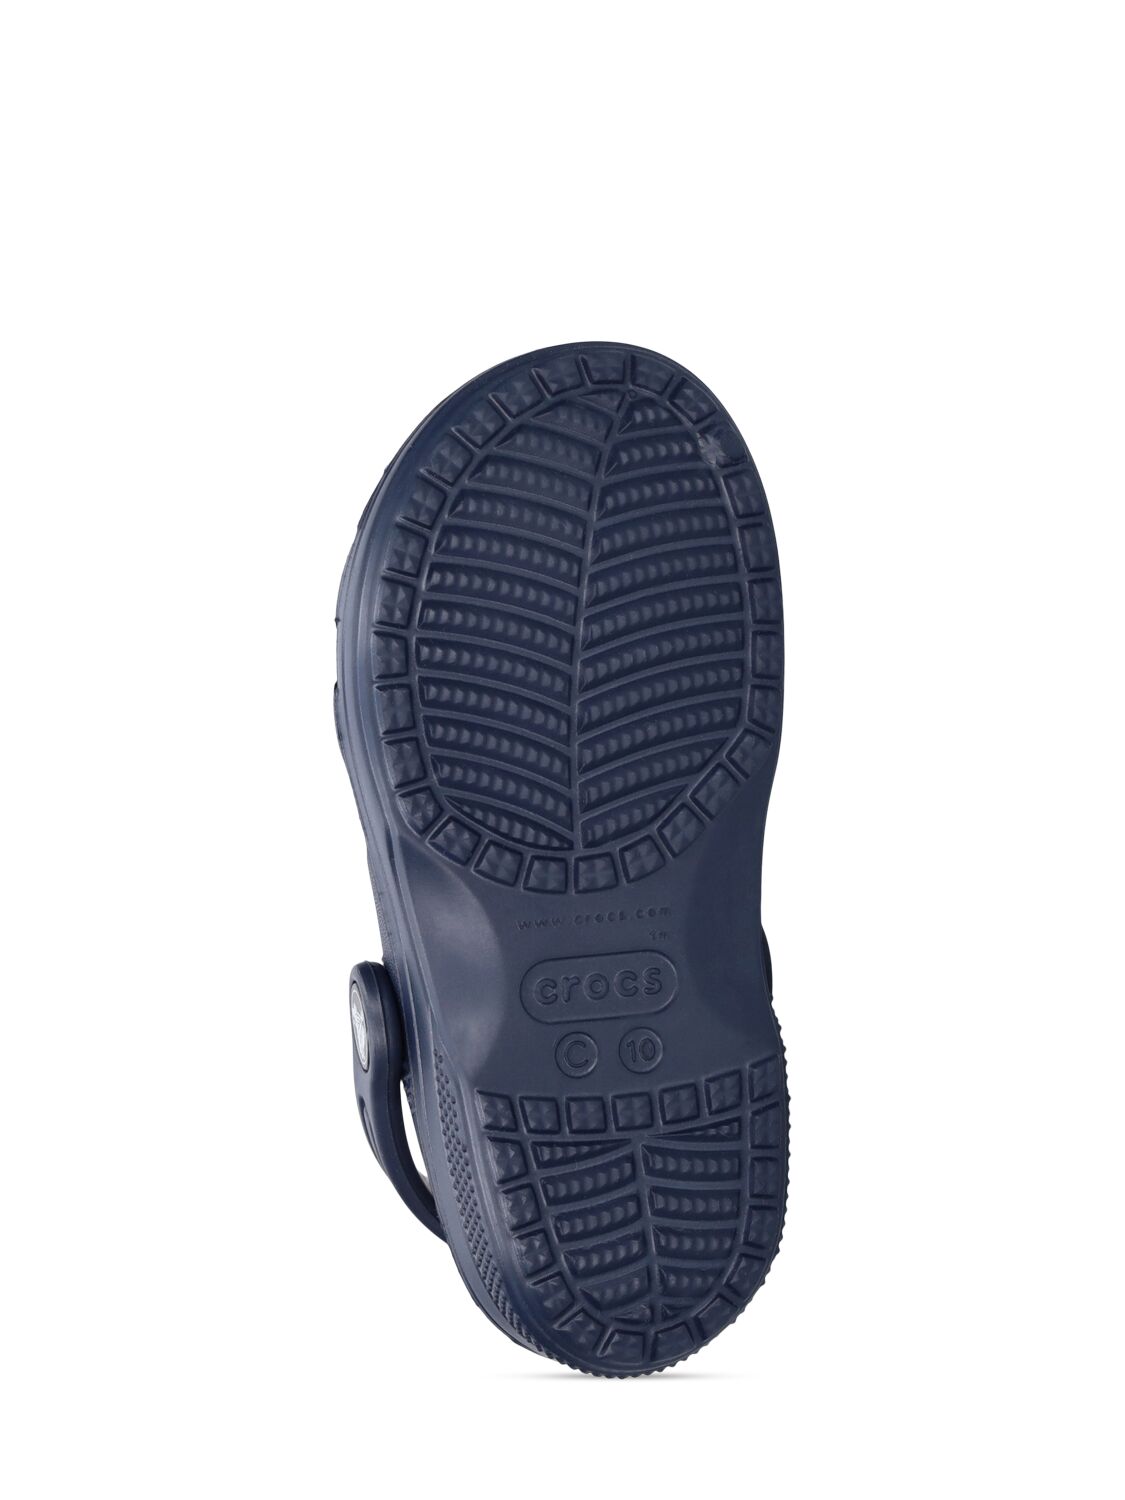 Shop Crocs Rubber Sandals In Navy